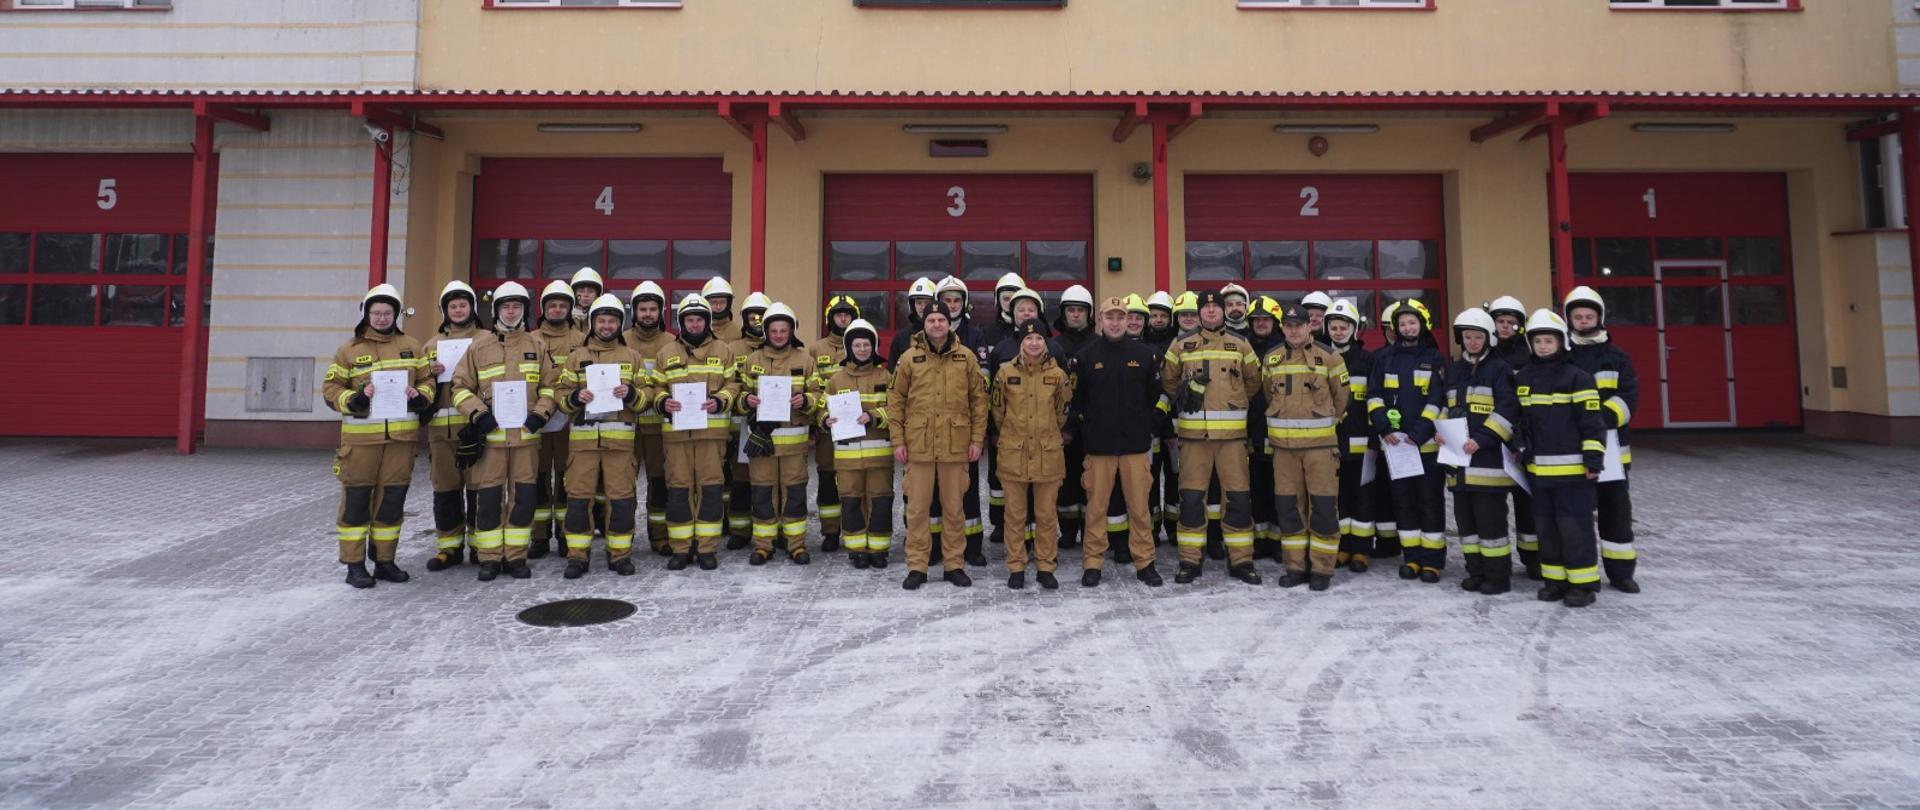 Pochmurny zimowy dzień na tle budynku Komendy Powiatowej Państwowej Straży Pożarnej w Chojnicach do zdjęcia pozuje grupa strażaków ubranych w piaskowe i czarne ubrania specjalne prezentując dyplomy ukończenia szkolenia podstawowego Strażaka Ratownika OSP. 